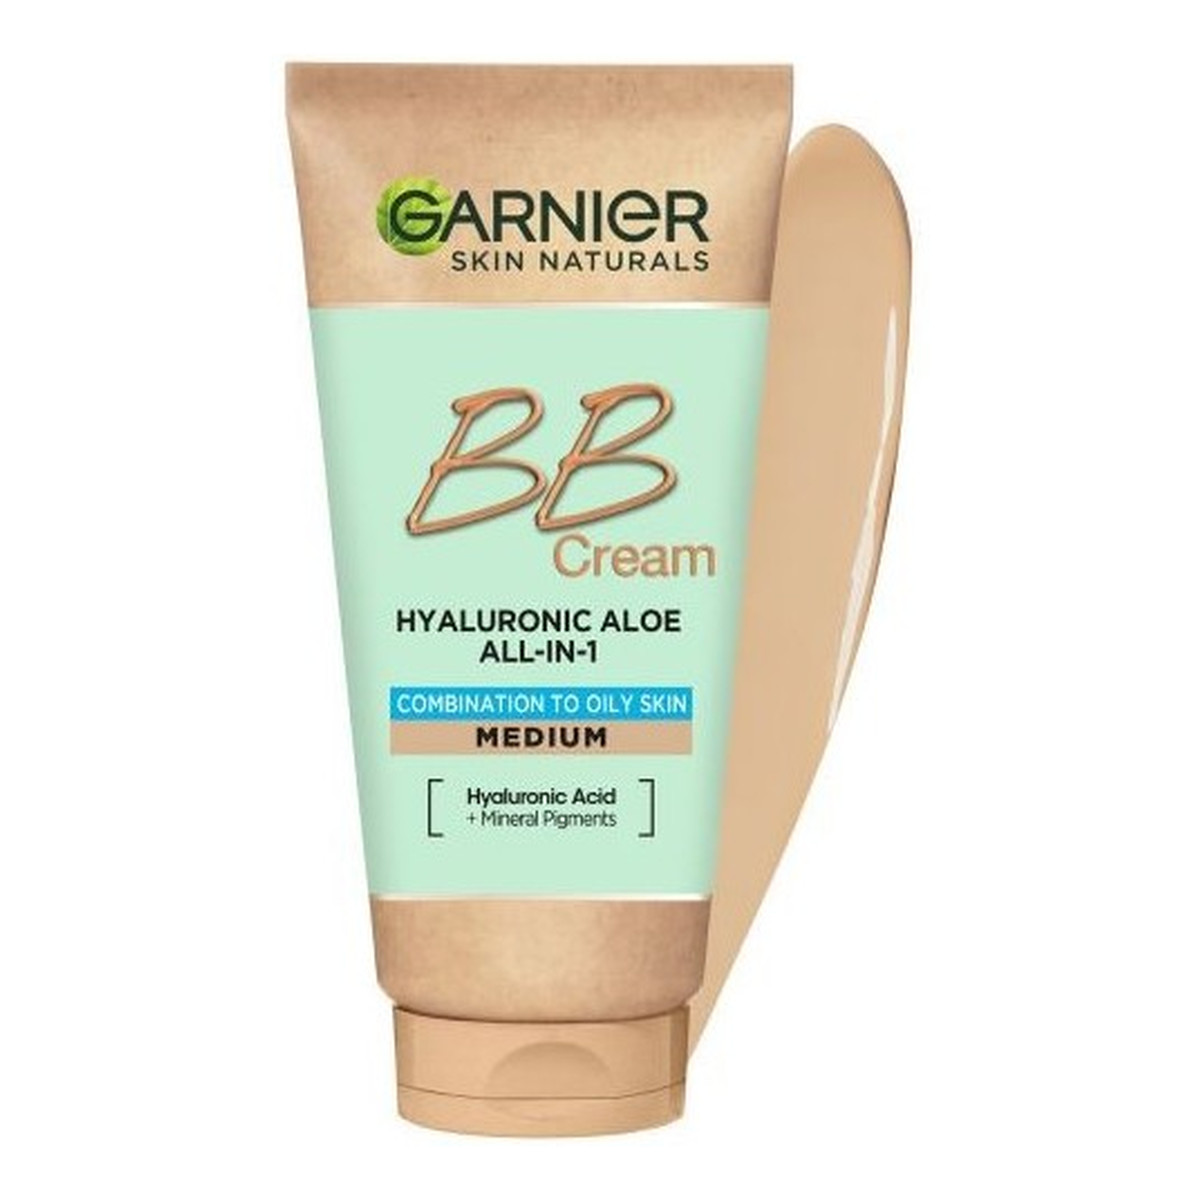 Garnier Hyaluronic Aloe All-In-1 BB Cream nawilżający Krem BB dla skóry tłustej i mieszanej 50ml